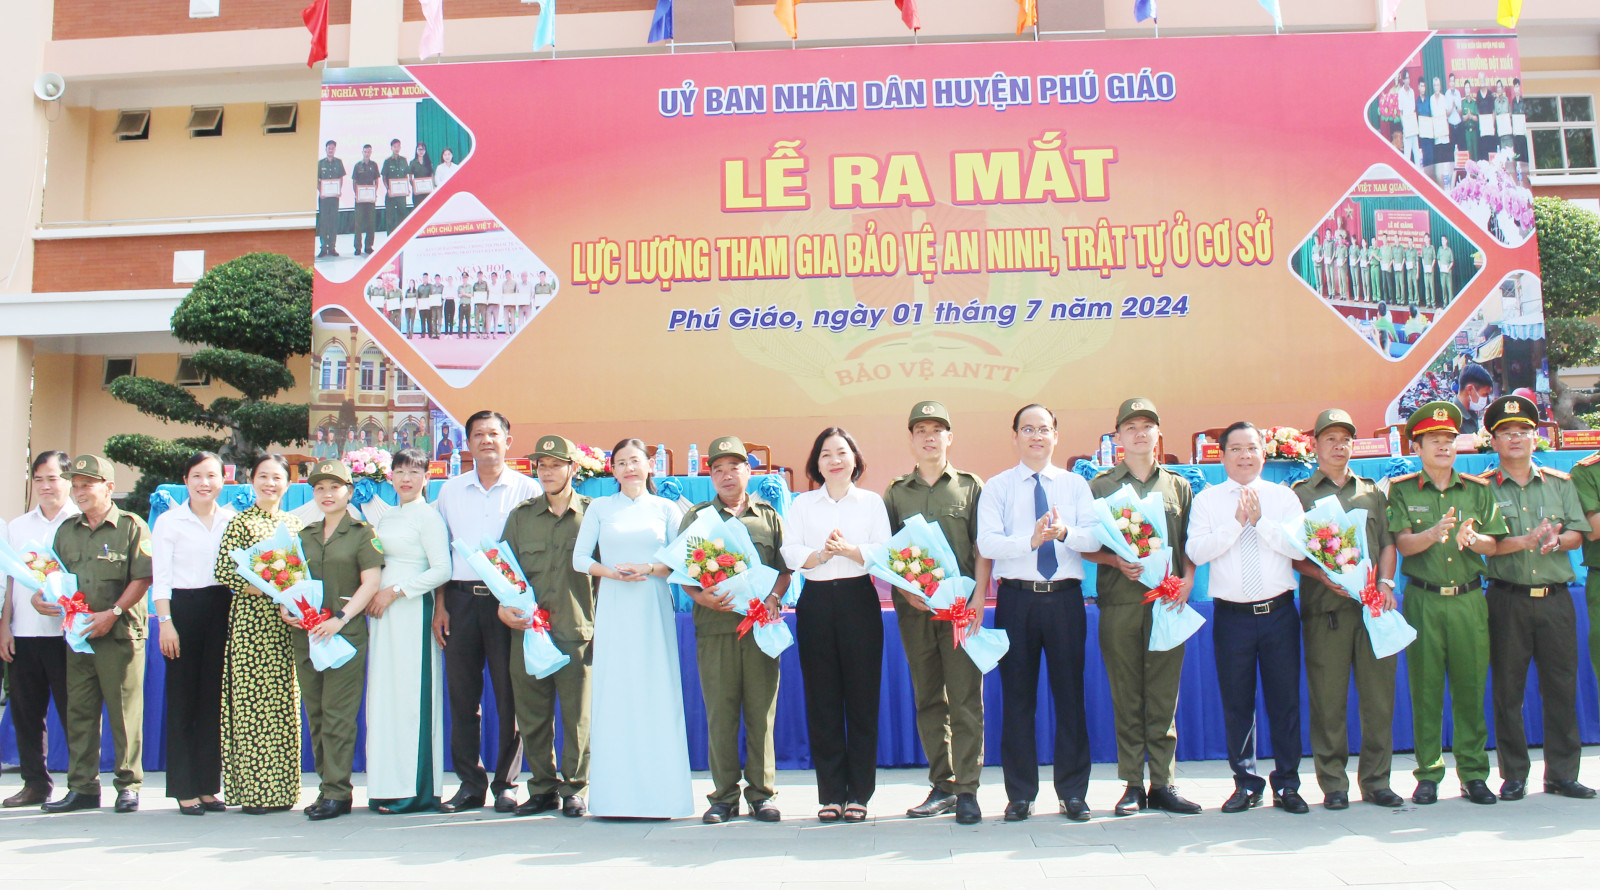 Lãnh đạo tỉnh và huyện Phú Giáo tặng hoa cho lực lượng tham gia bảo vệ ANTT ở cơ sở.